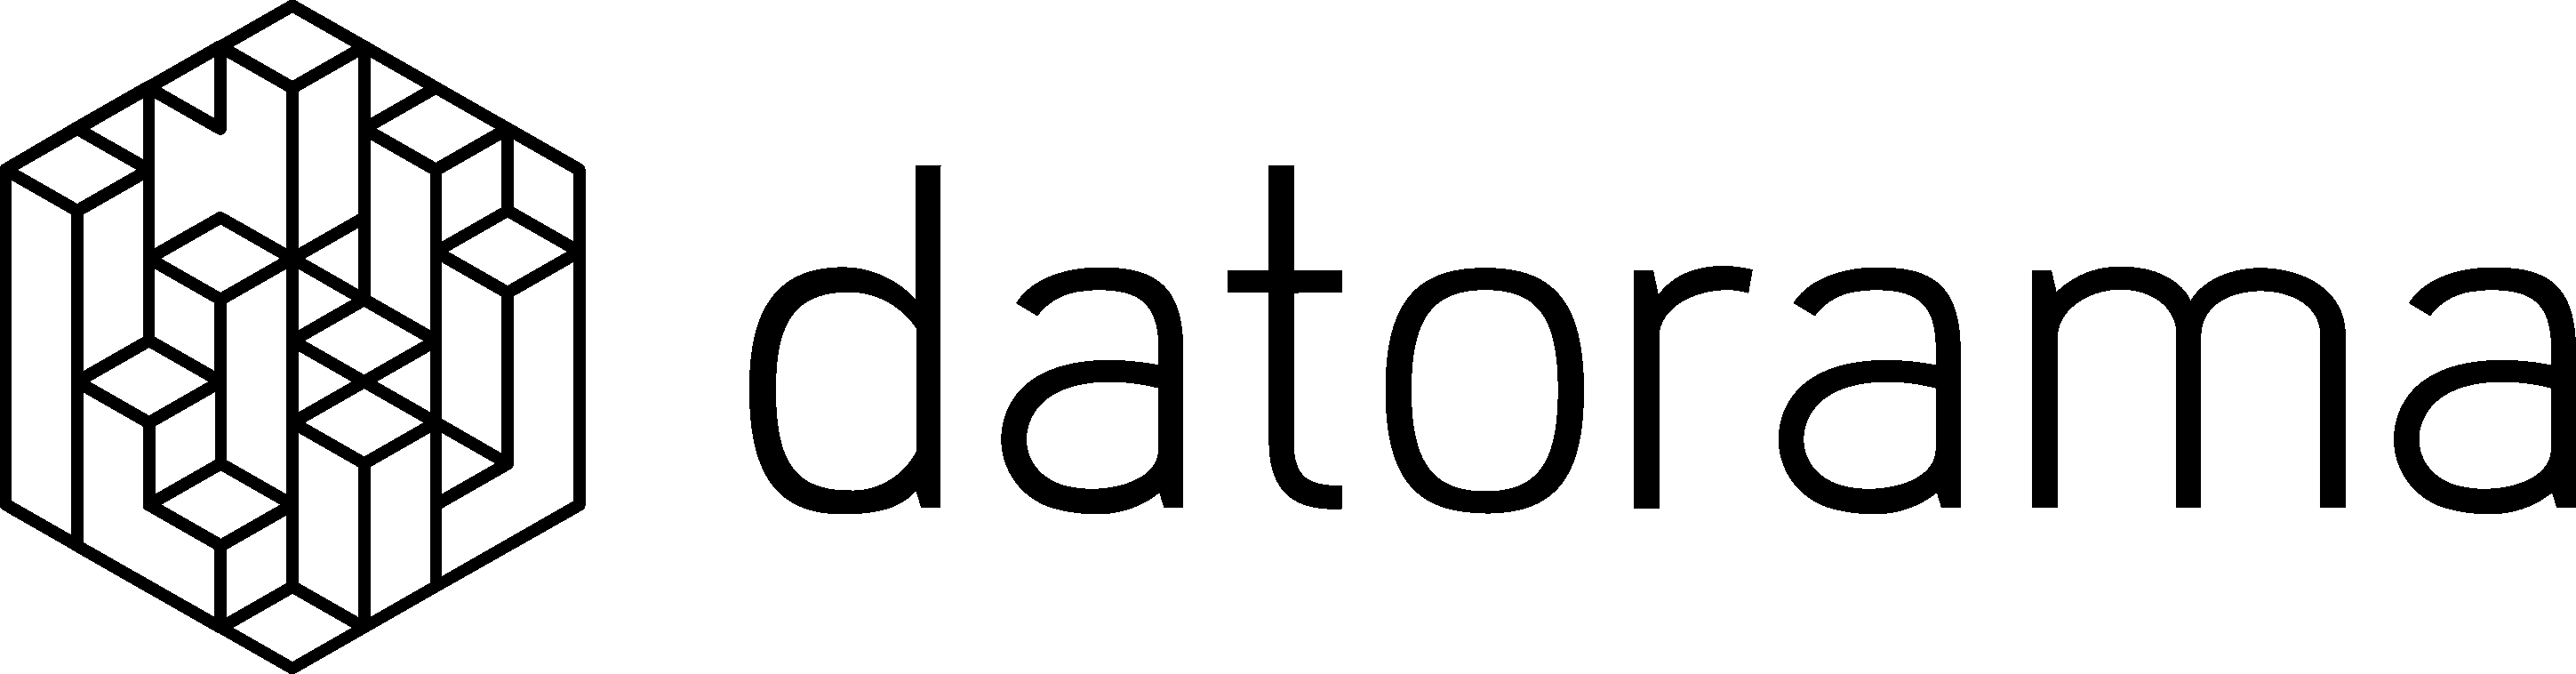 Datorama Logo - Datorama Salesforce (2898x758), Png Download